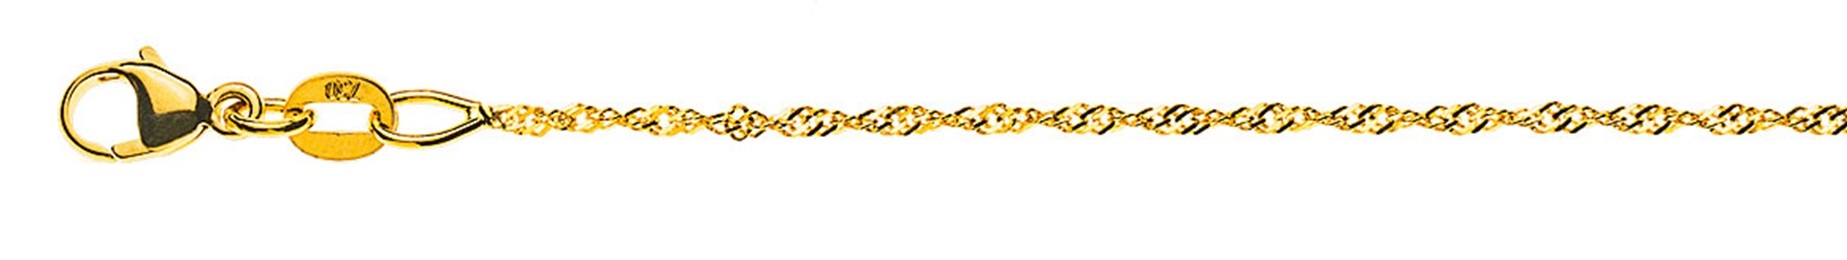 AURONOS Prestige Halskette Gelbgold 18K Singapurkette 38cm 1.2mm